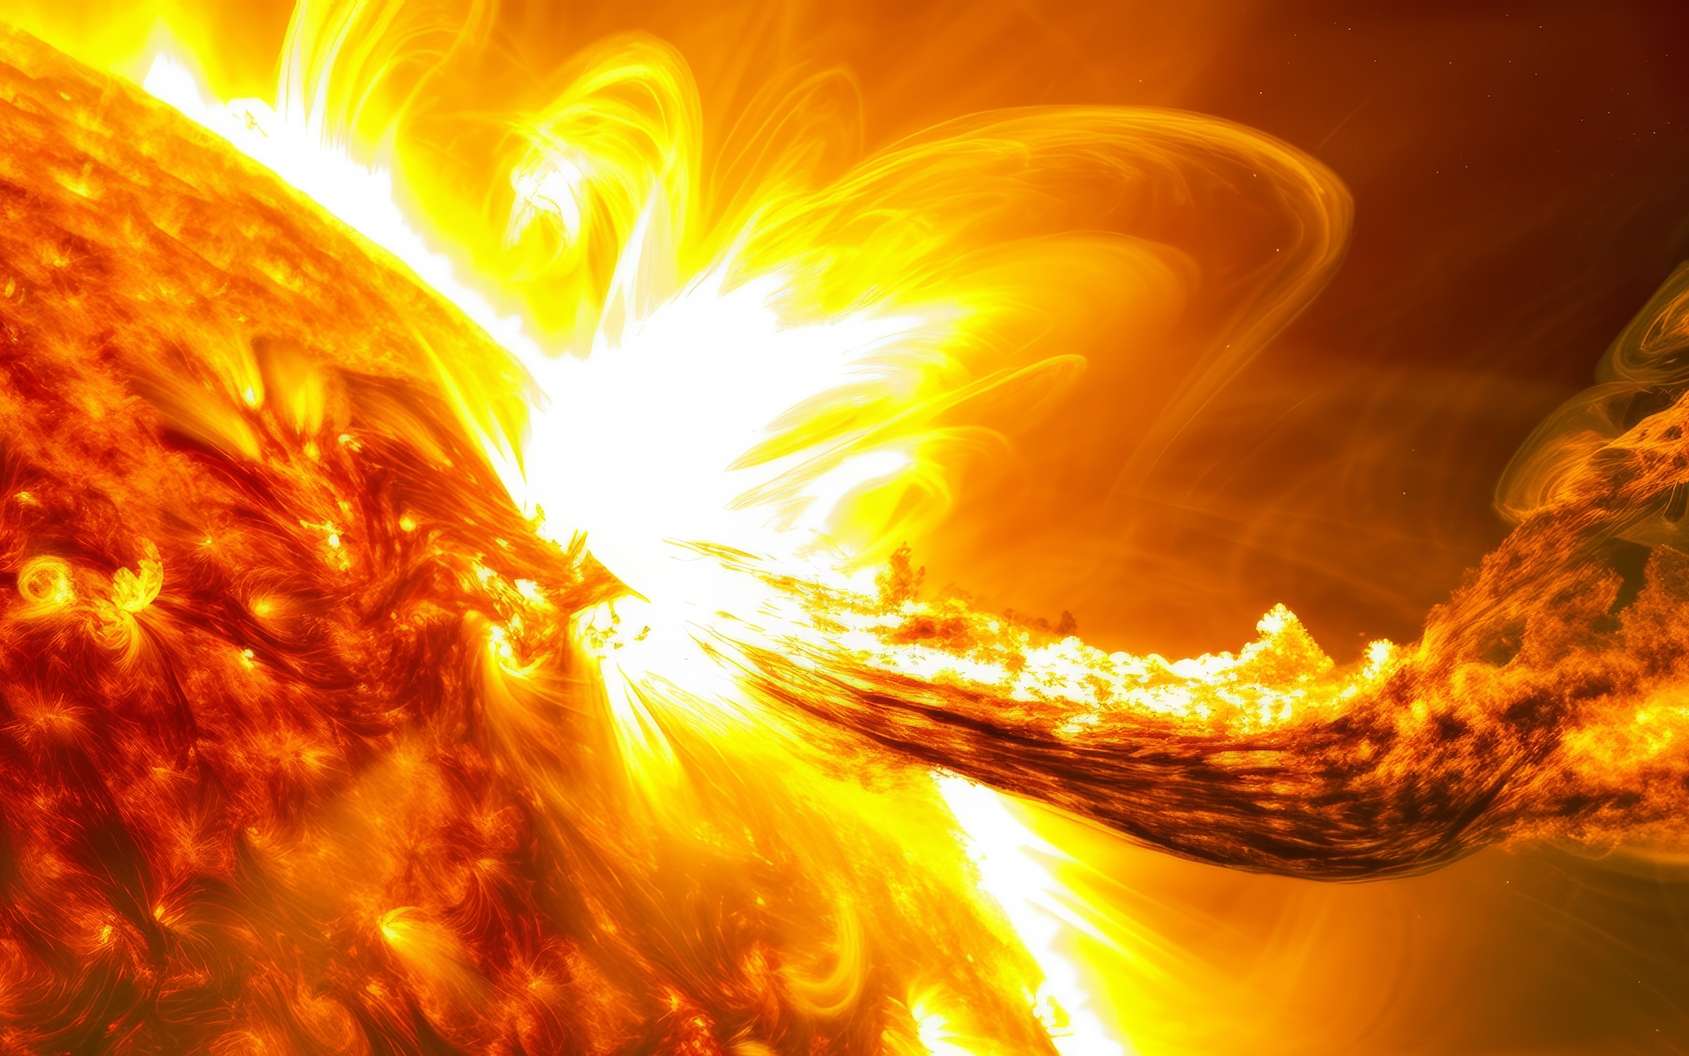 La gigantesque tache solaire est de retour et vient d'émettre une des plus puissantes éruptions depuis des décennies